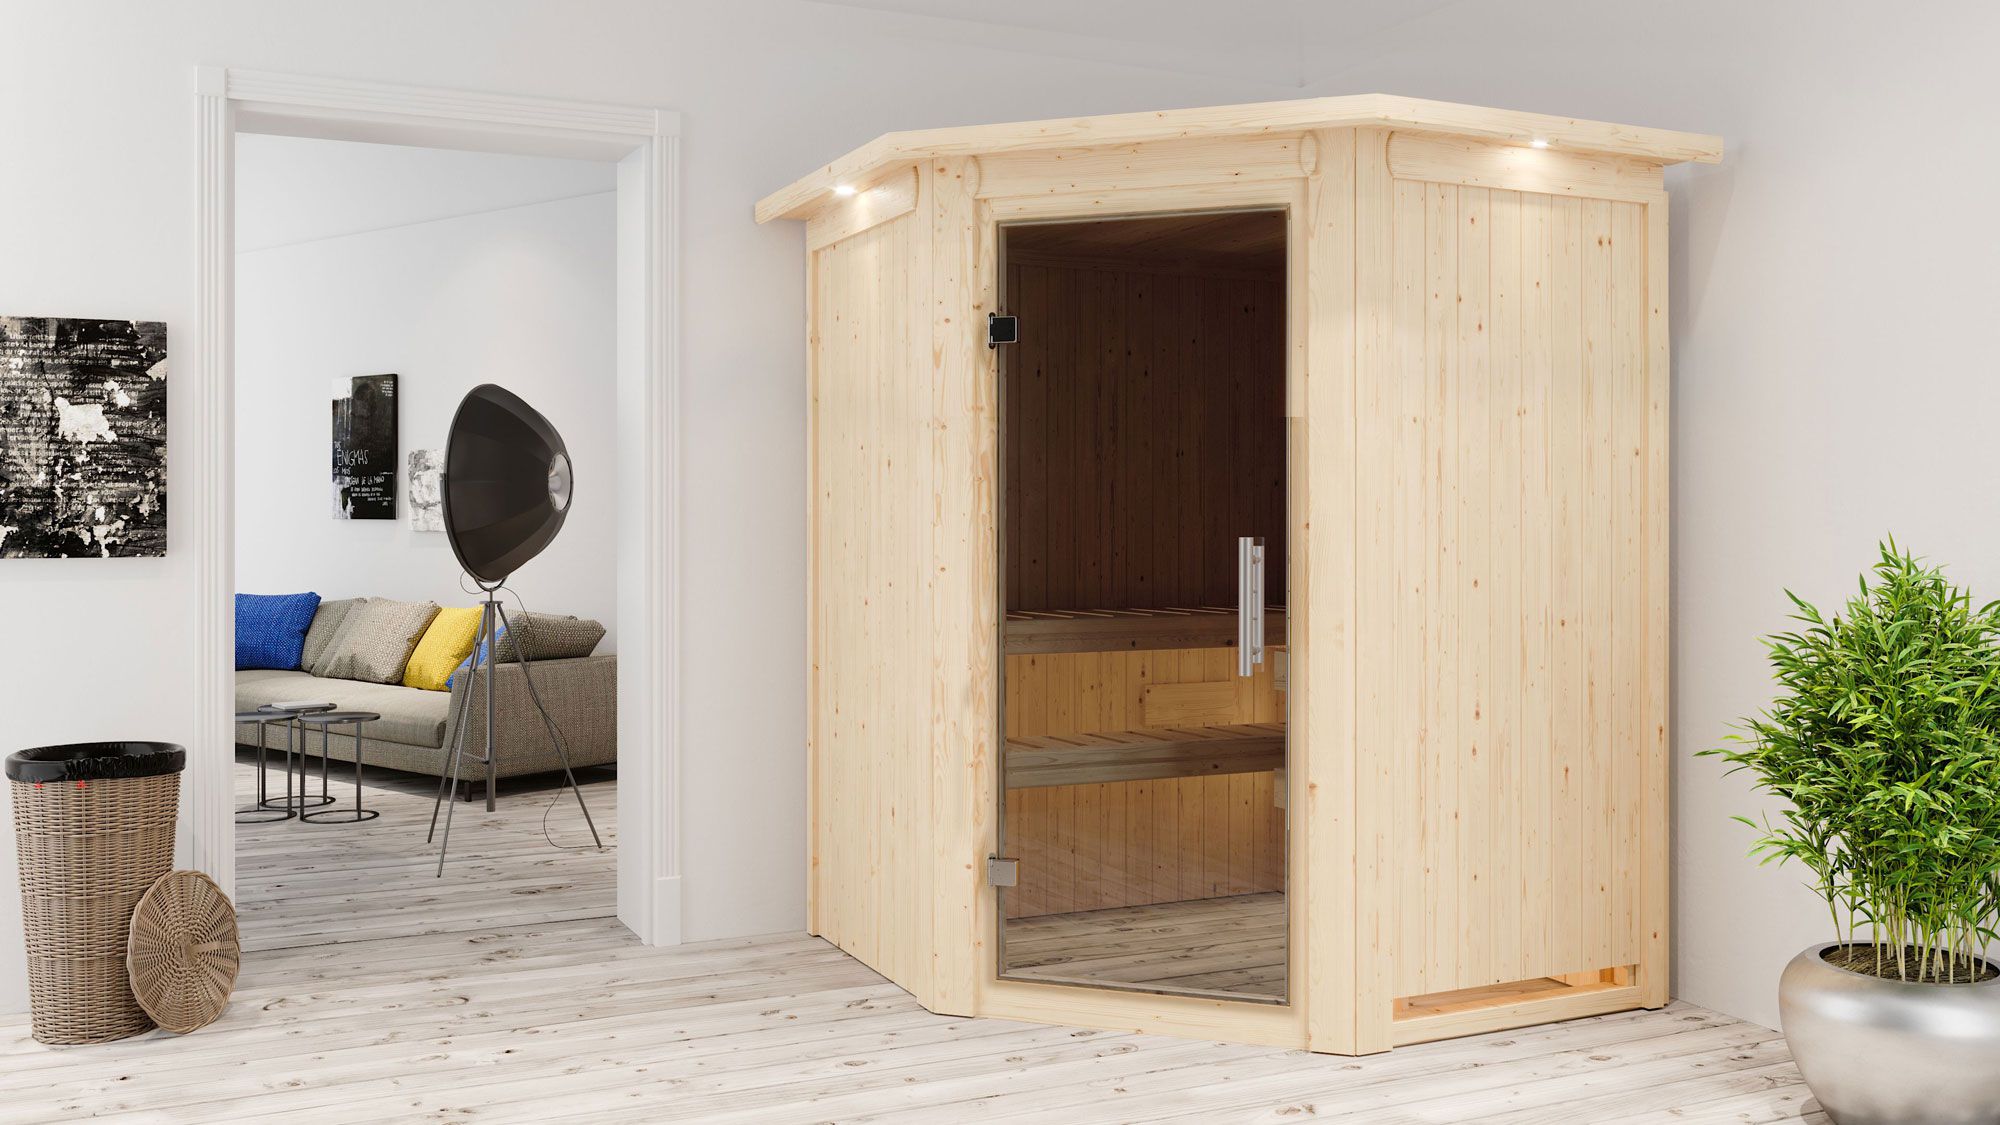 Sauna "Eetu" SET mit graphitfarbener Tür und Kranz - Farbe: Natur, Ofen externe Steuerung easy 9 kW - 165 x 165 x 202 cm (B x T x H)